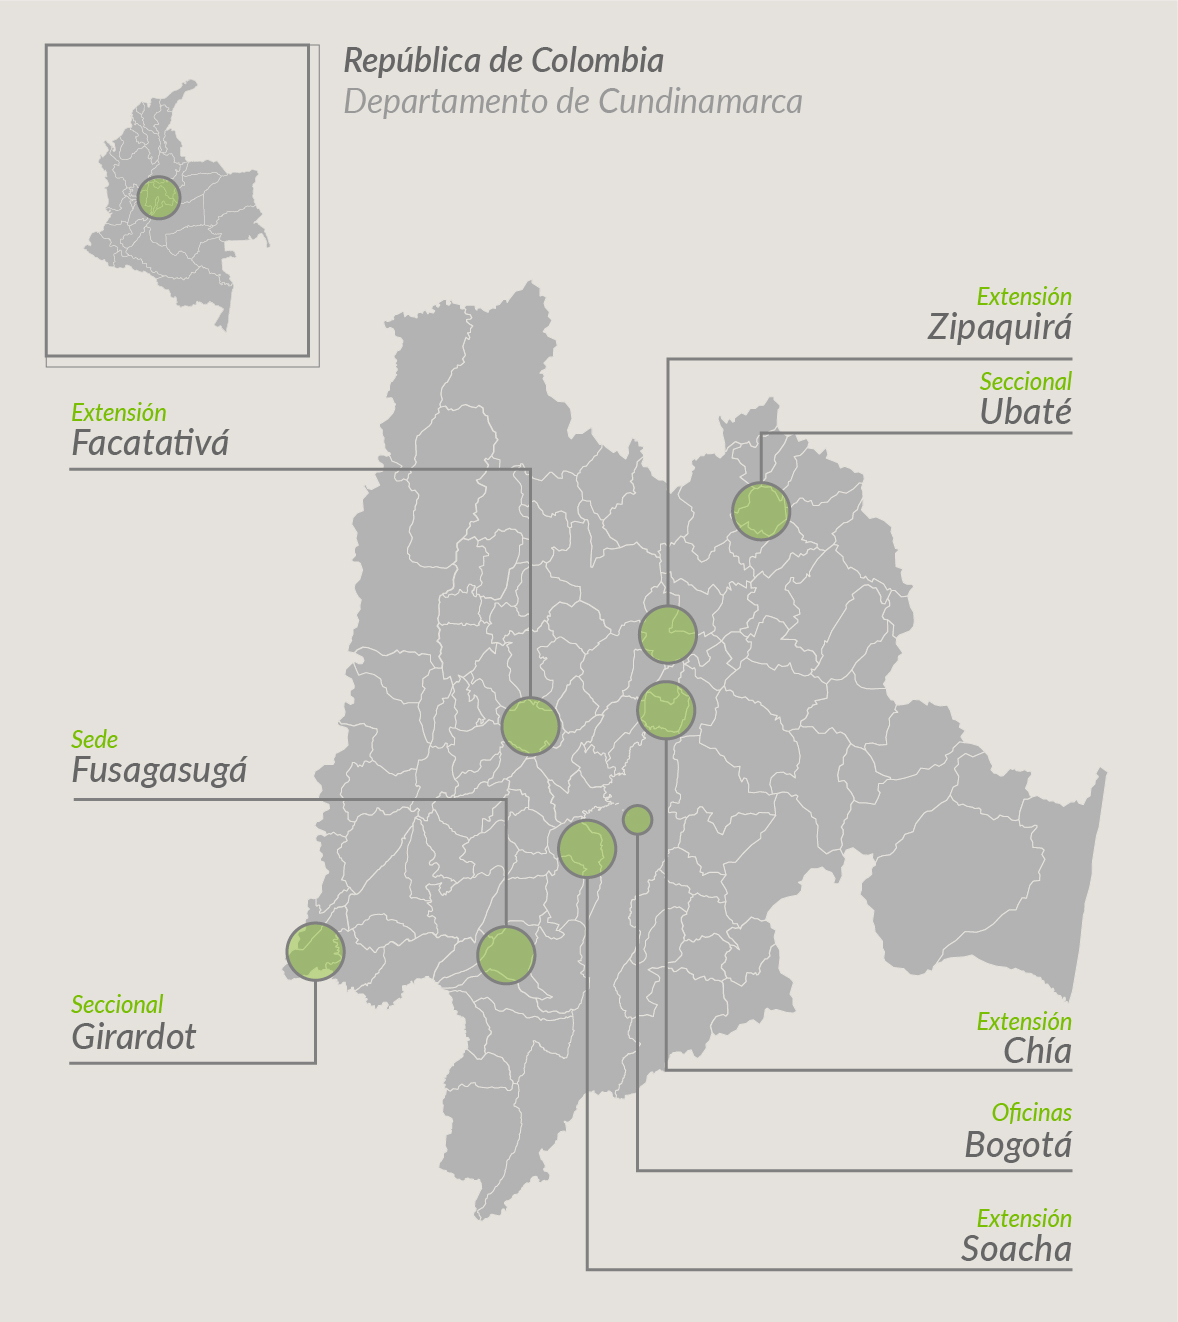 mapa de cundinamarca con puntos señalando las sedes de la universidad